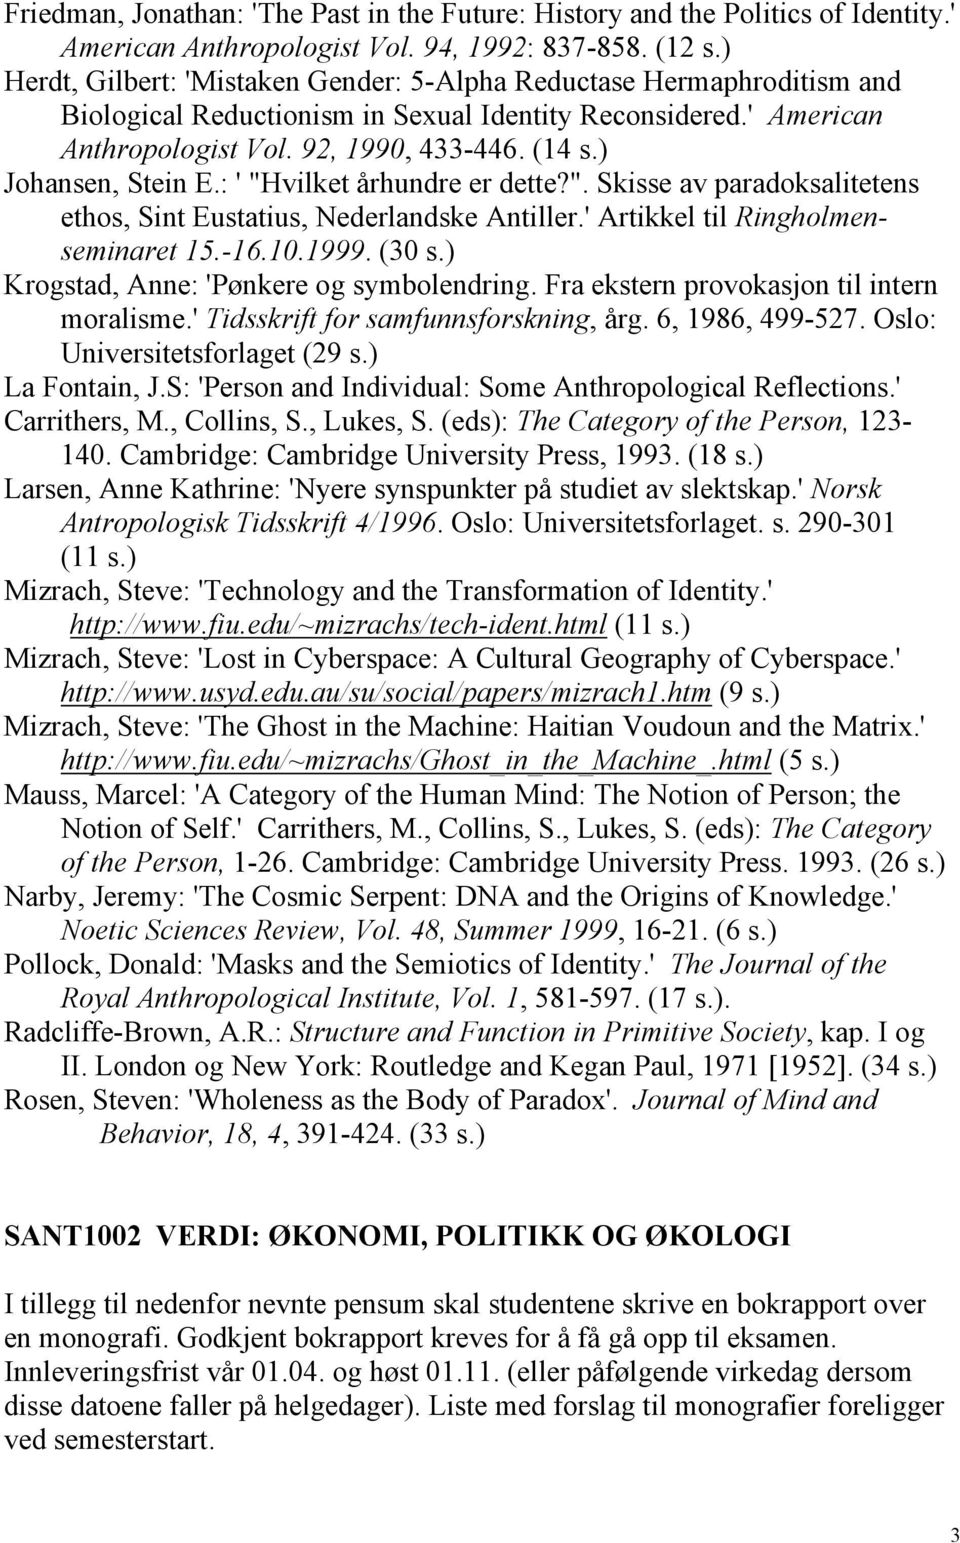 ) Johansen, Stein E.: ' "Hvilket århundre er dette?". Skisse av paradoksalitetens ethos, Sint Eustatius, Nederlandske Antiller.' Artikkel til Ringholmenseminaret 15.-16.10.1999. (30 s.